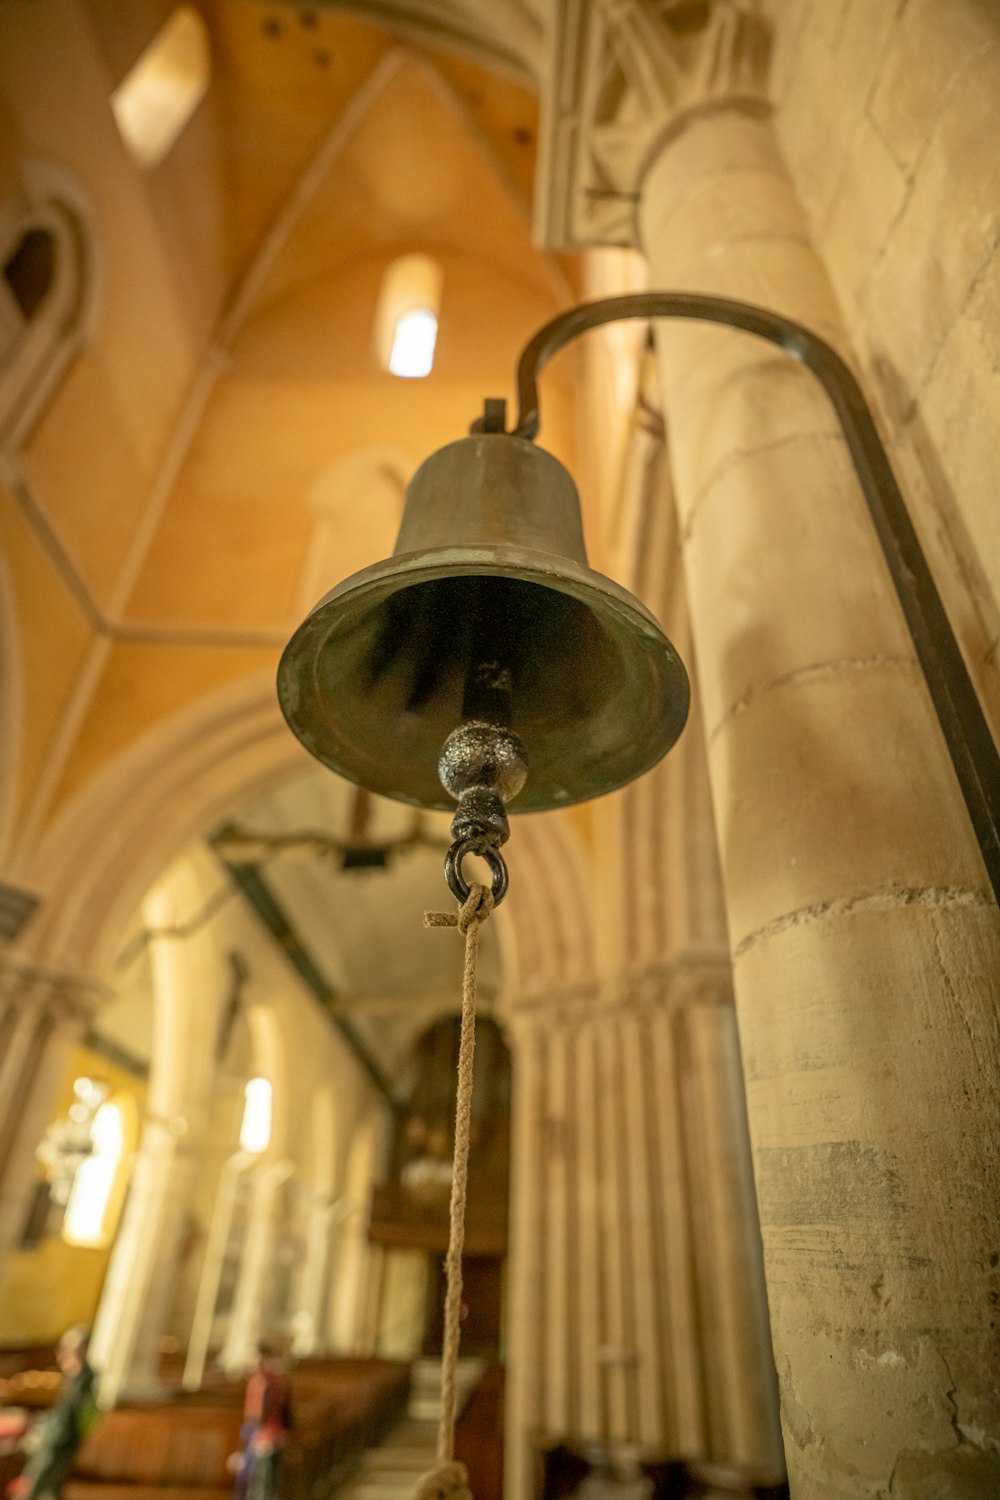 教会の天井からぶら下がっている鐘